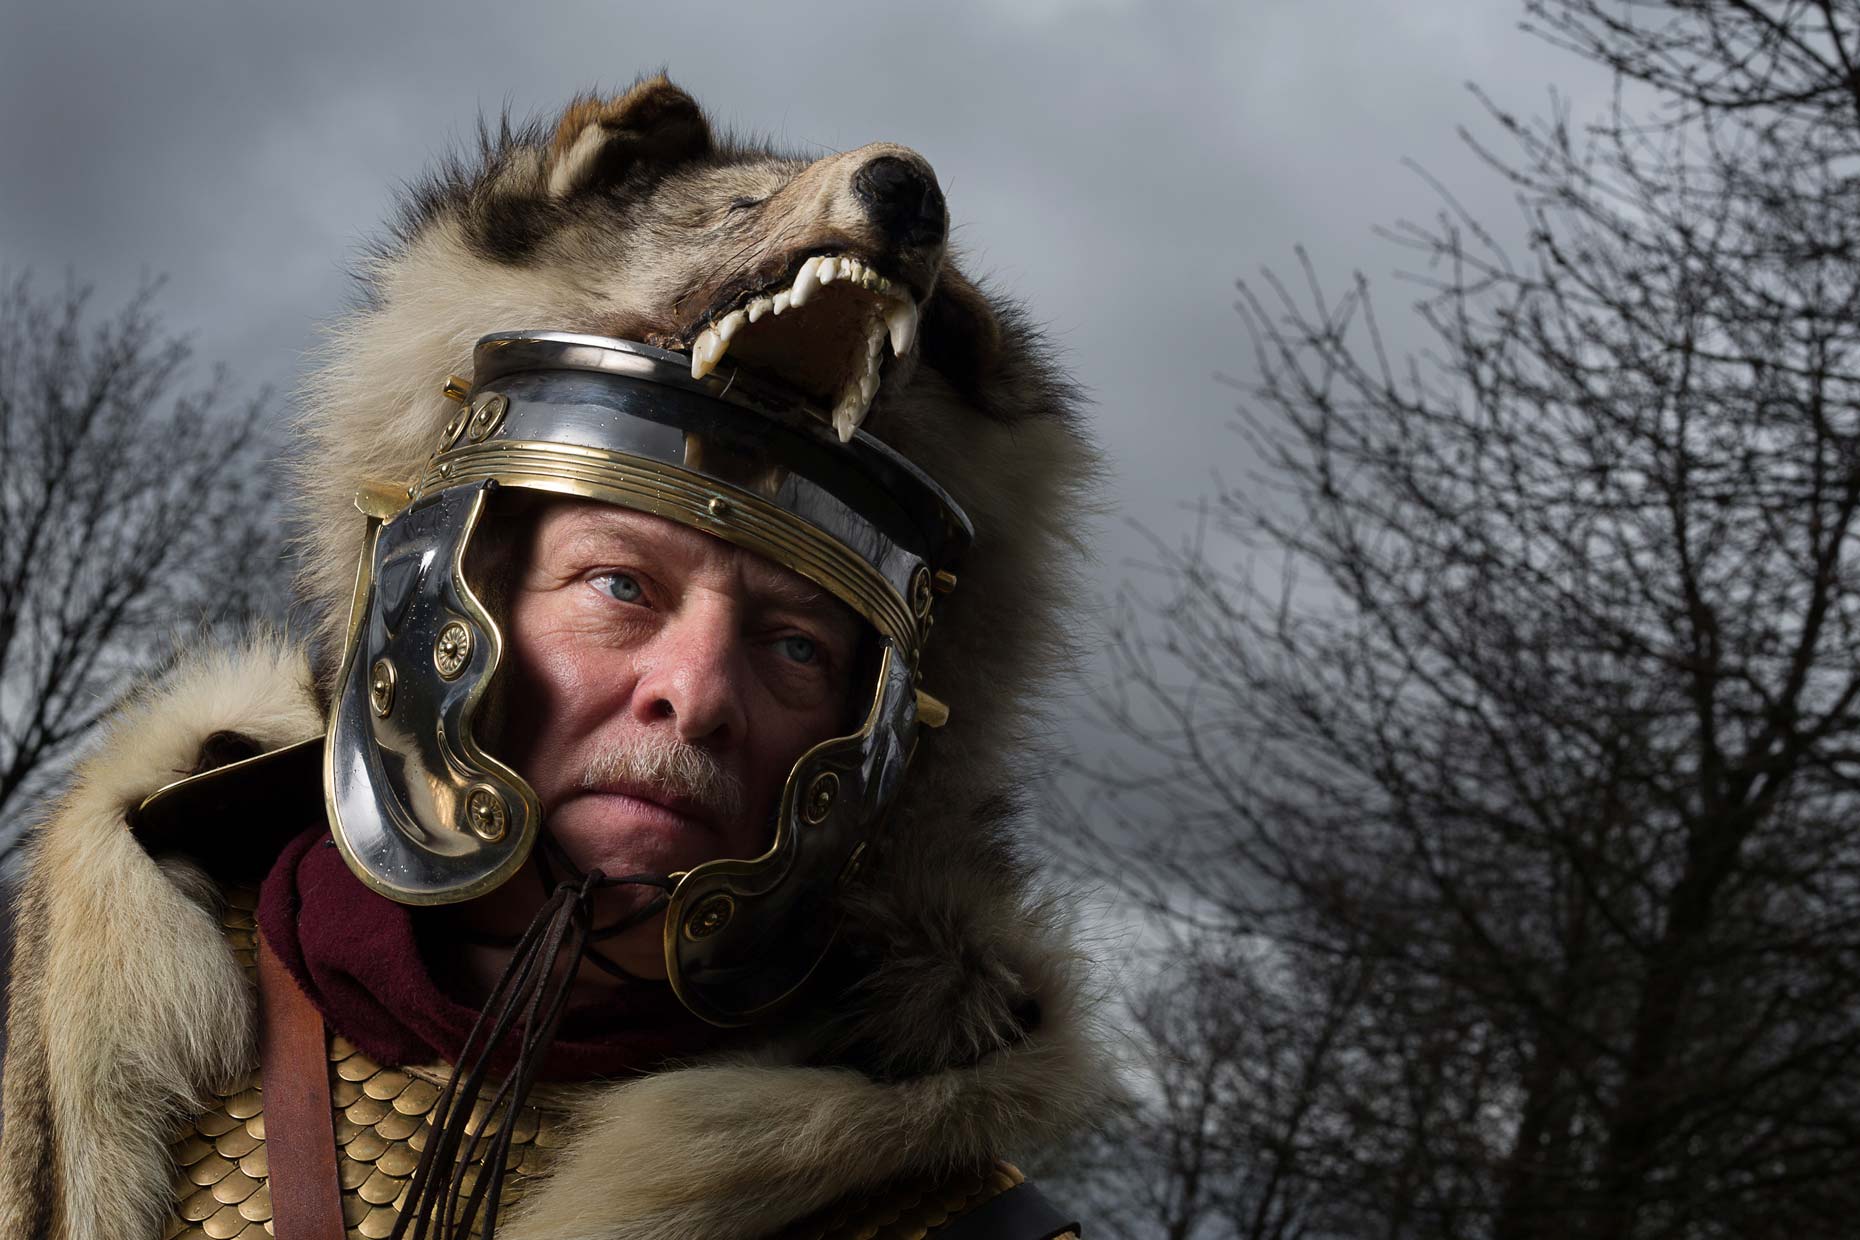 Portrait of Roman Soldier wearing bearskin, by Glasgow photographer Sutton-Hibbert